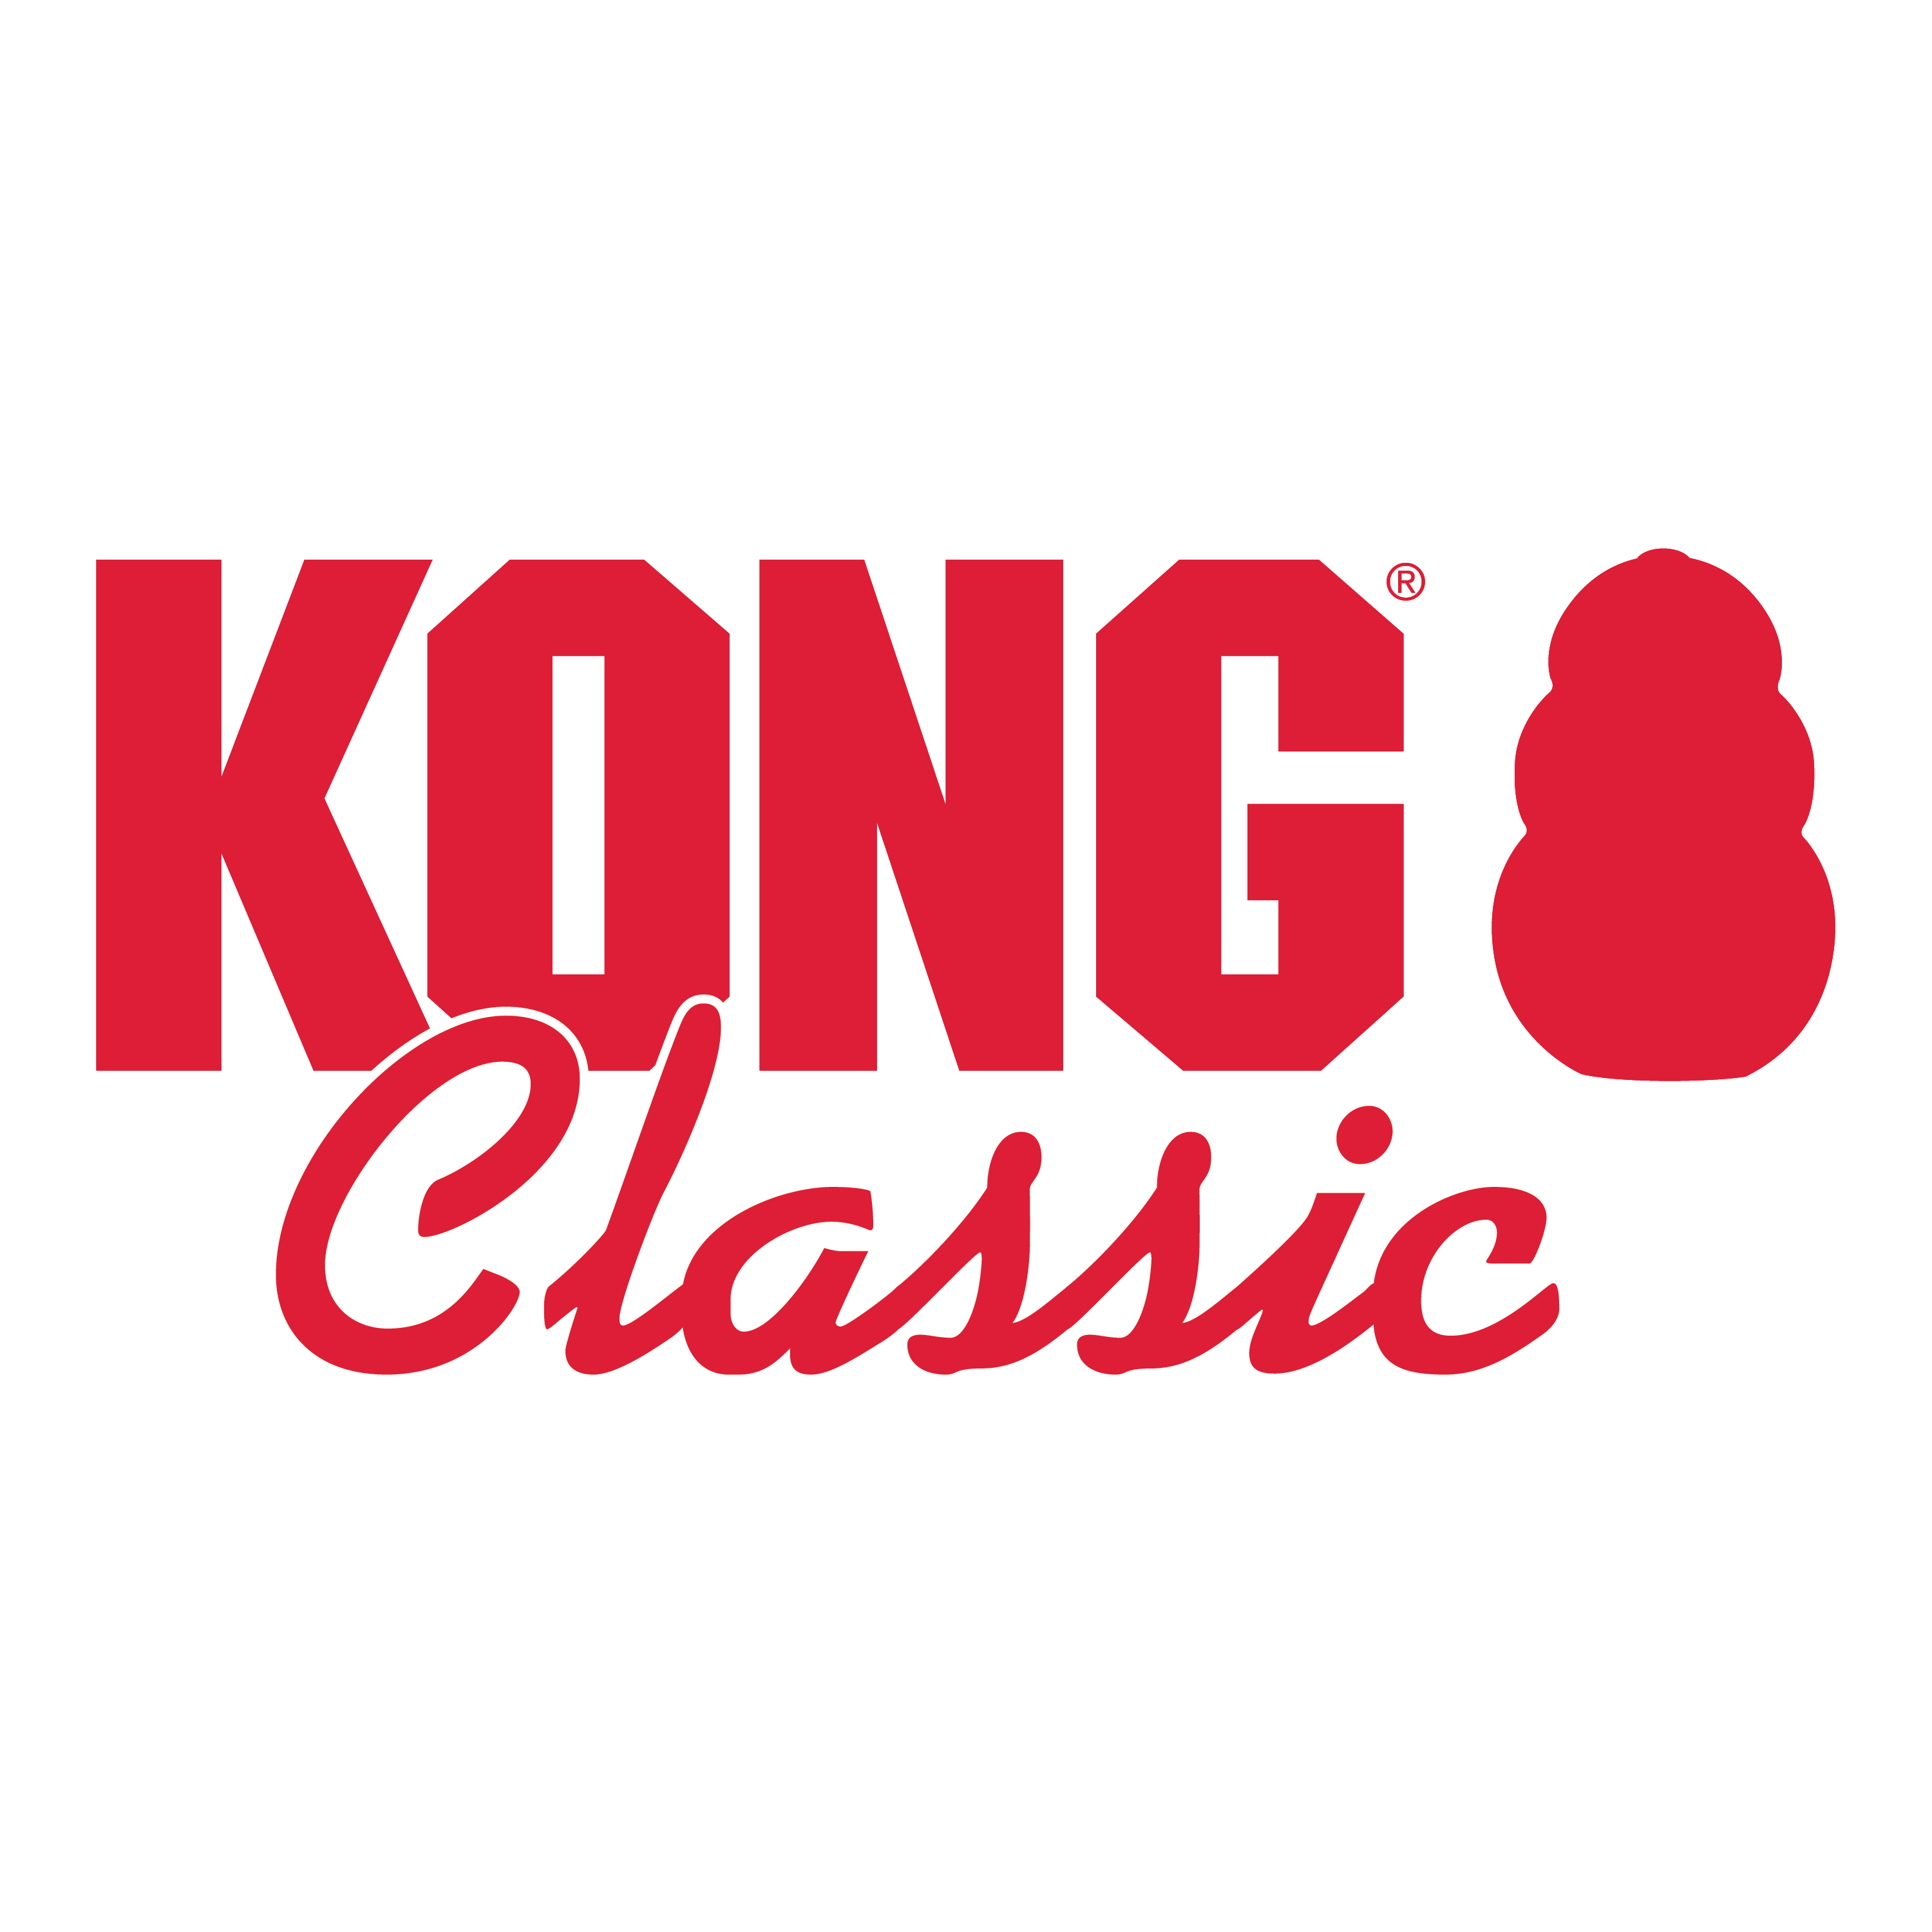 KONG Classic alt1 Produktbild